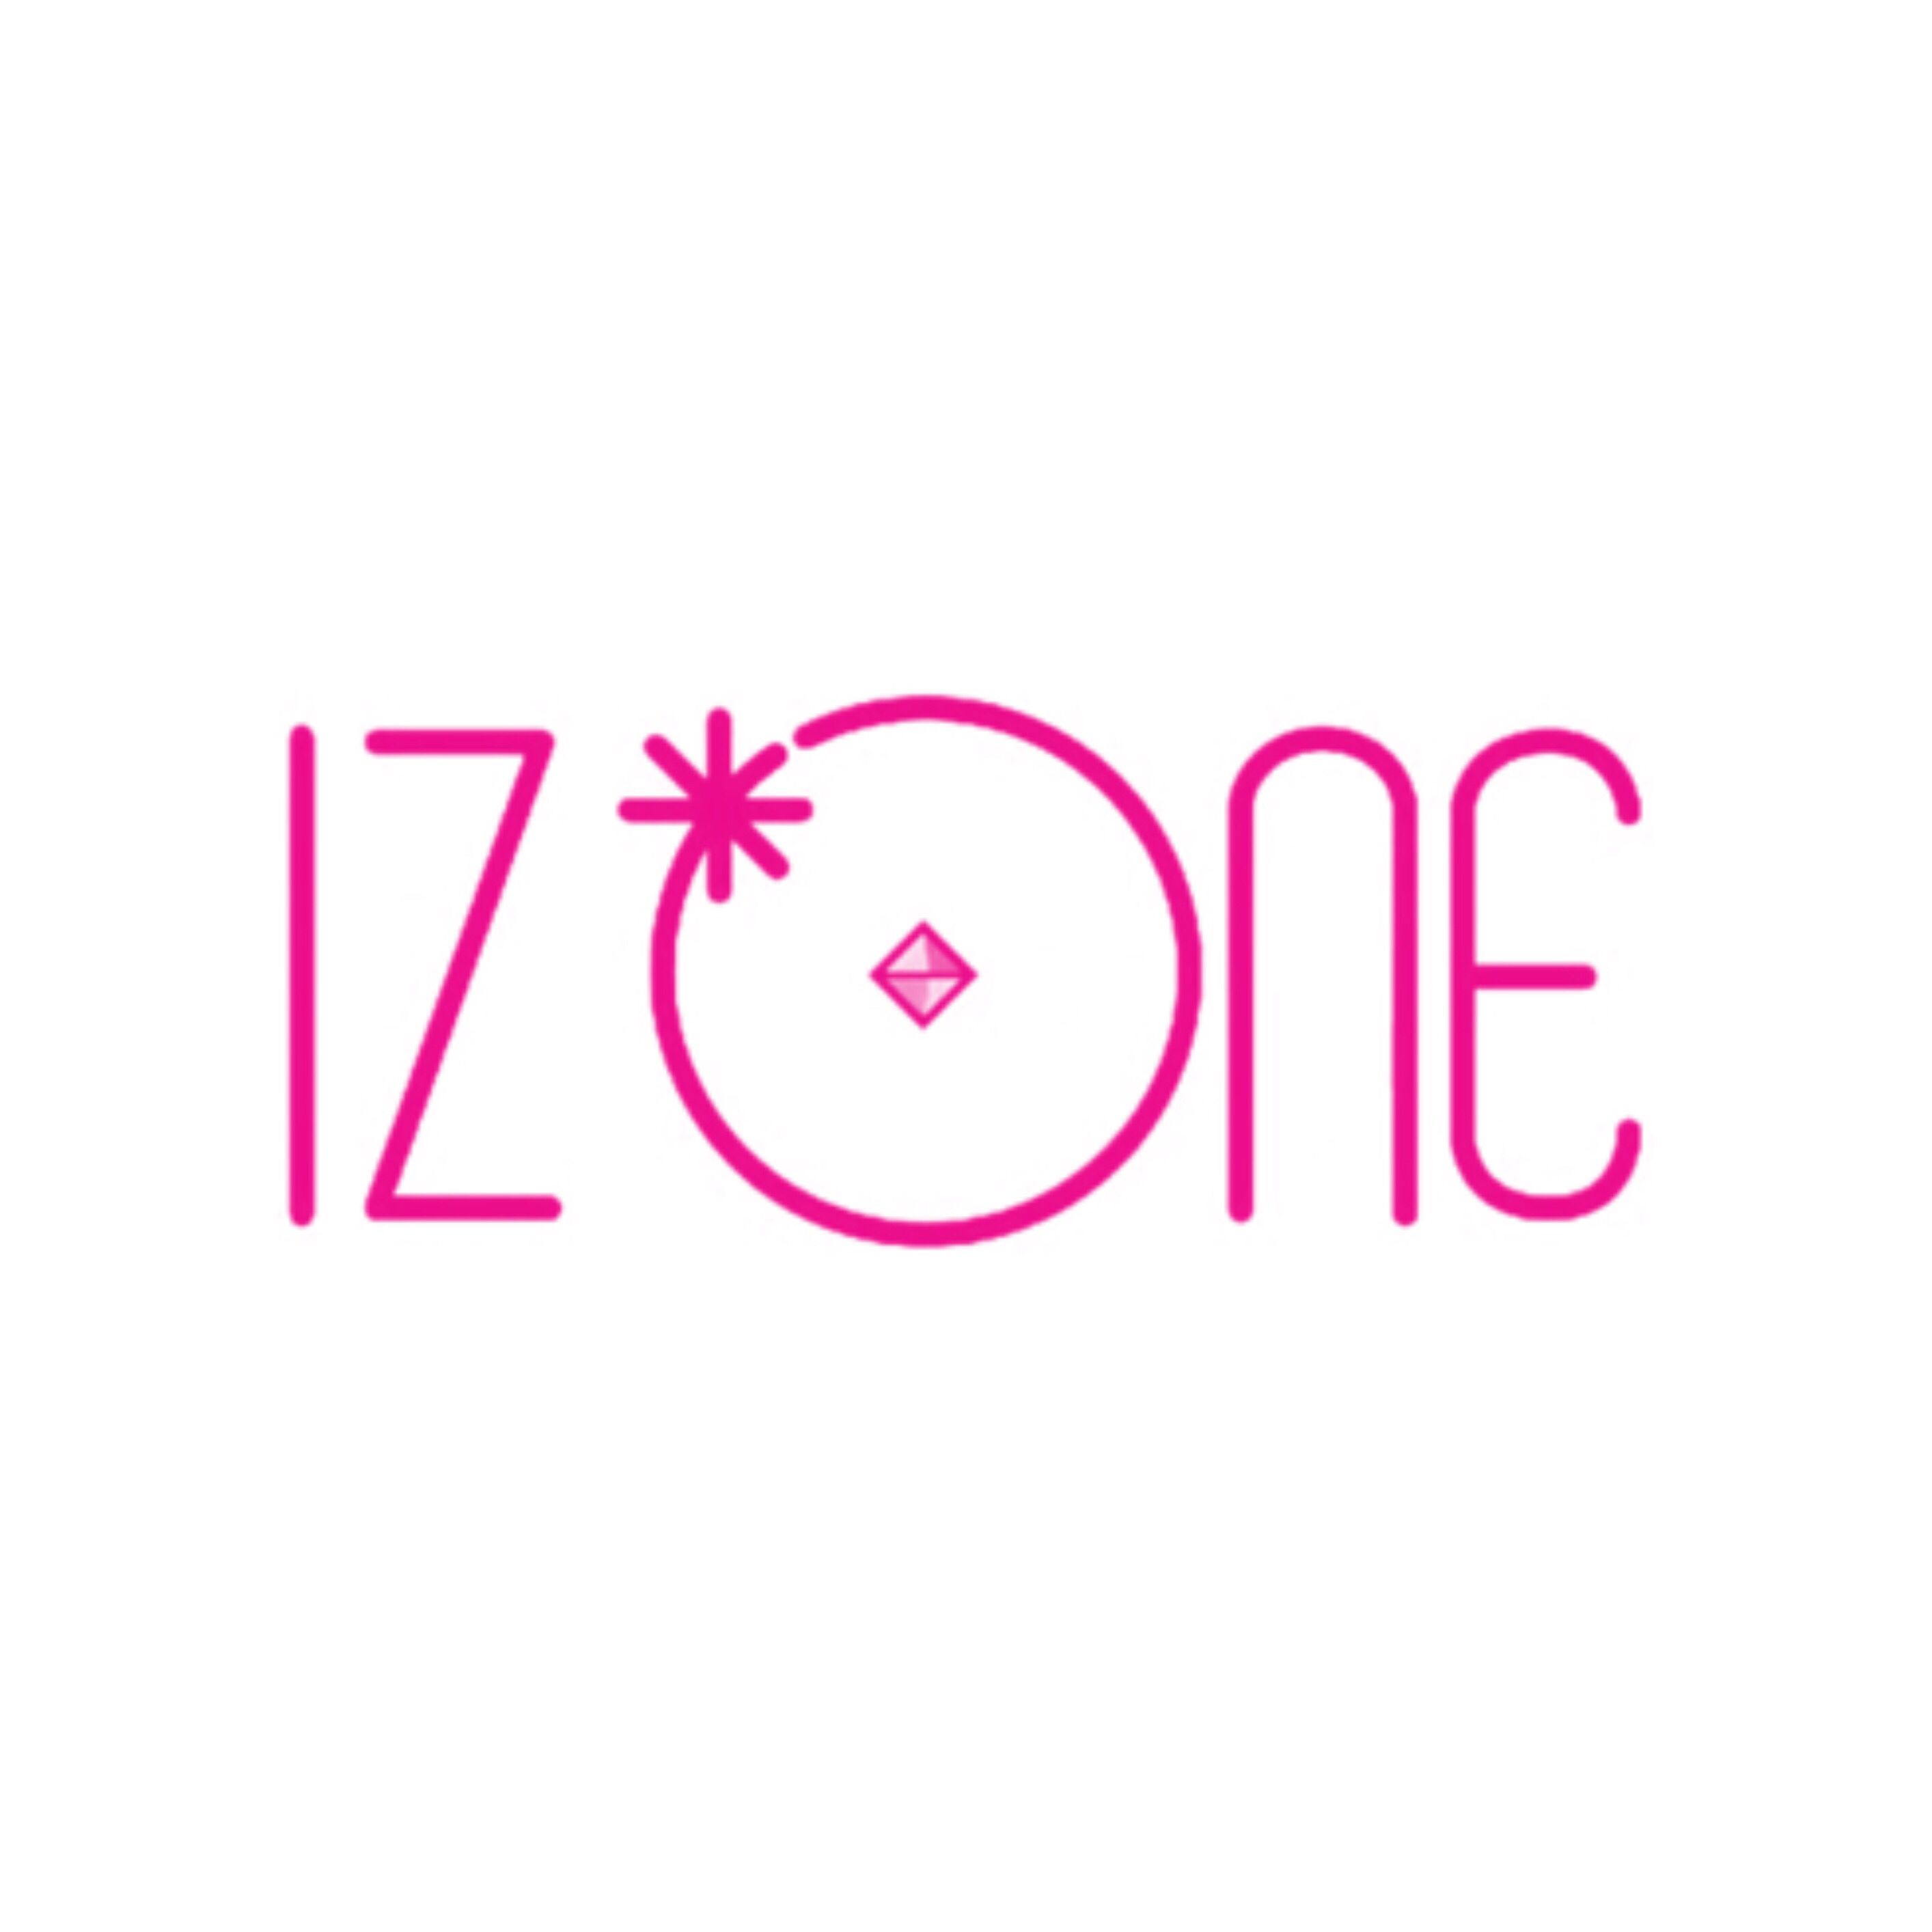 IZONE logo